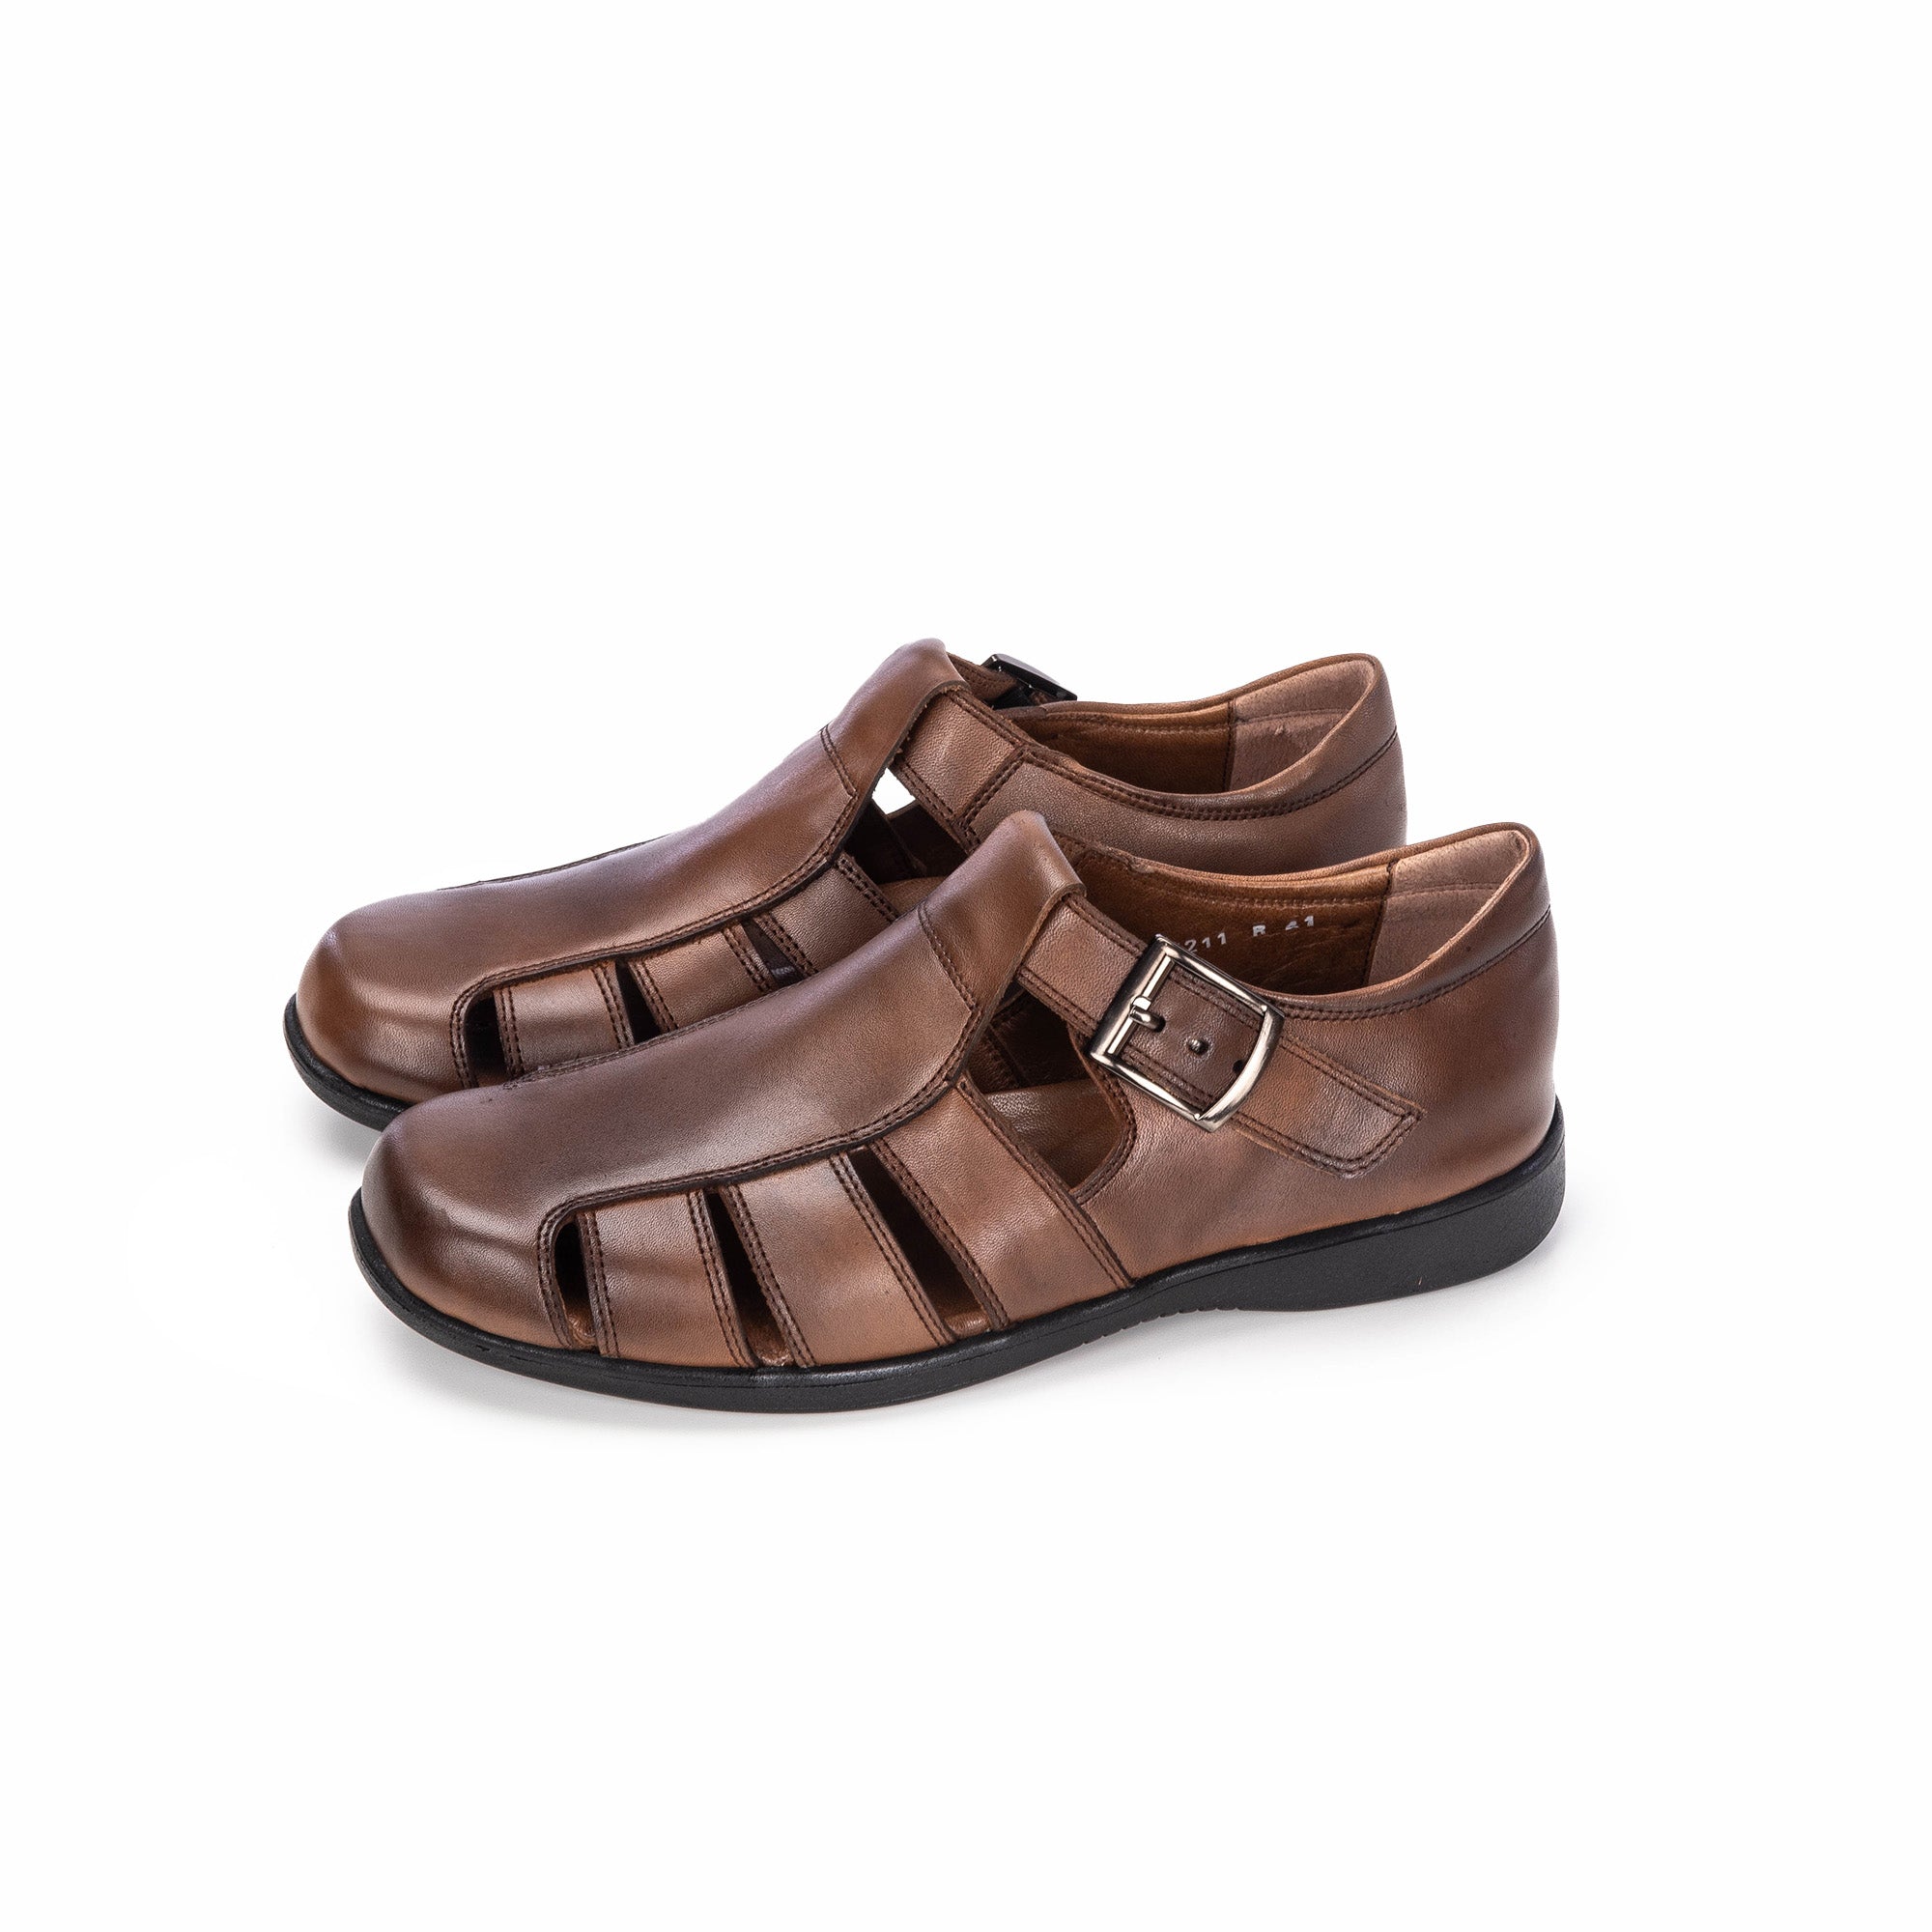 '''5211 Sandale en cuir marron vintage